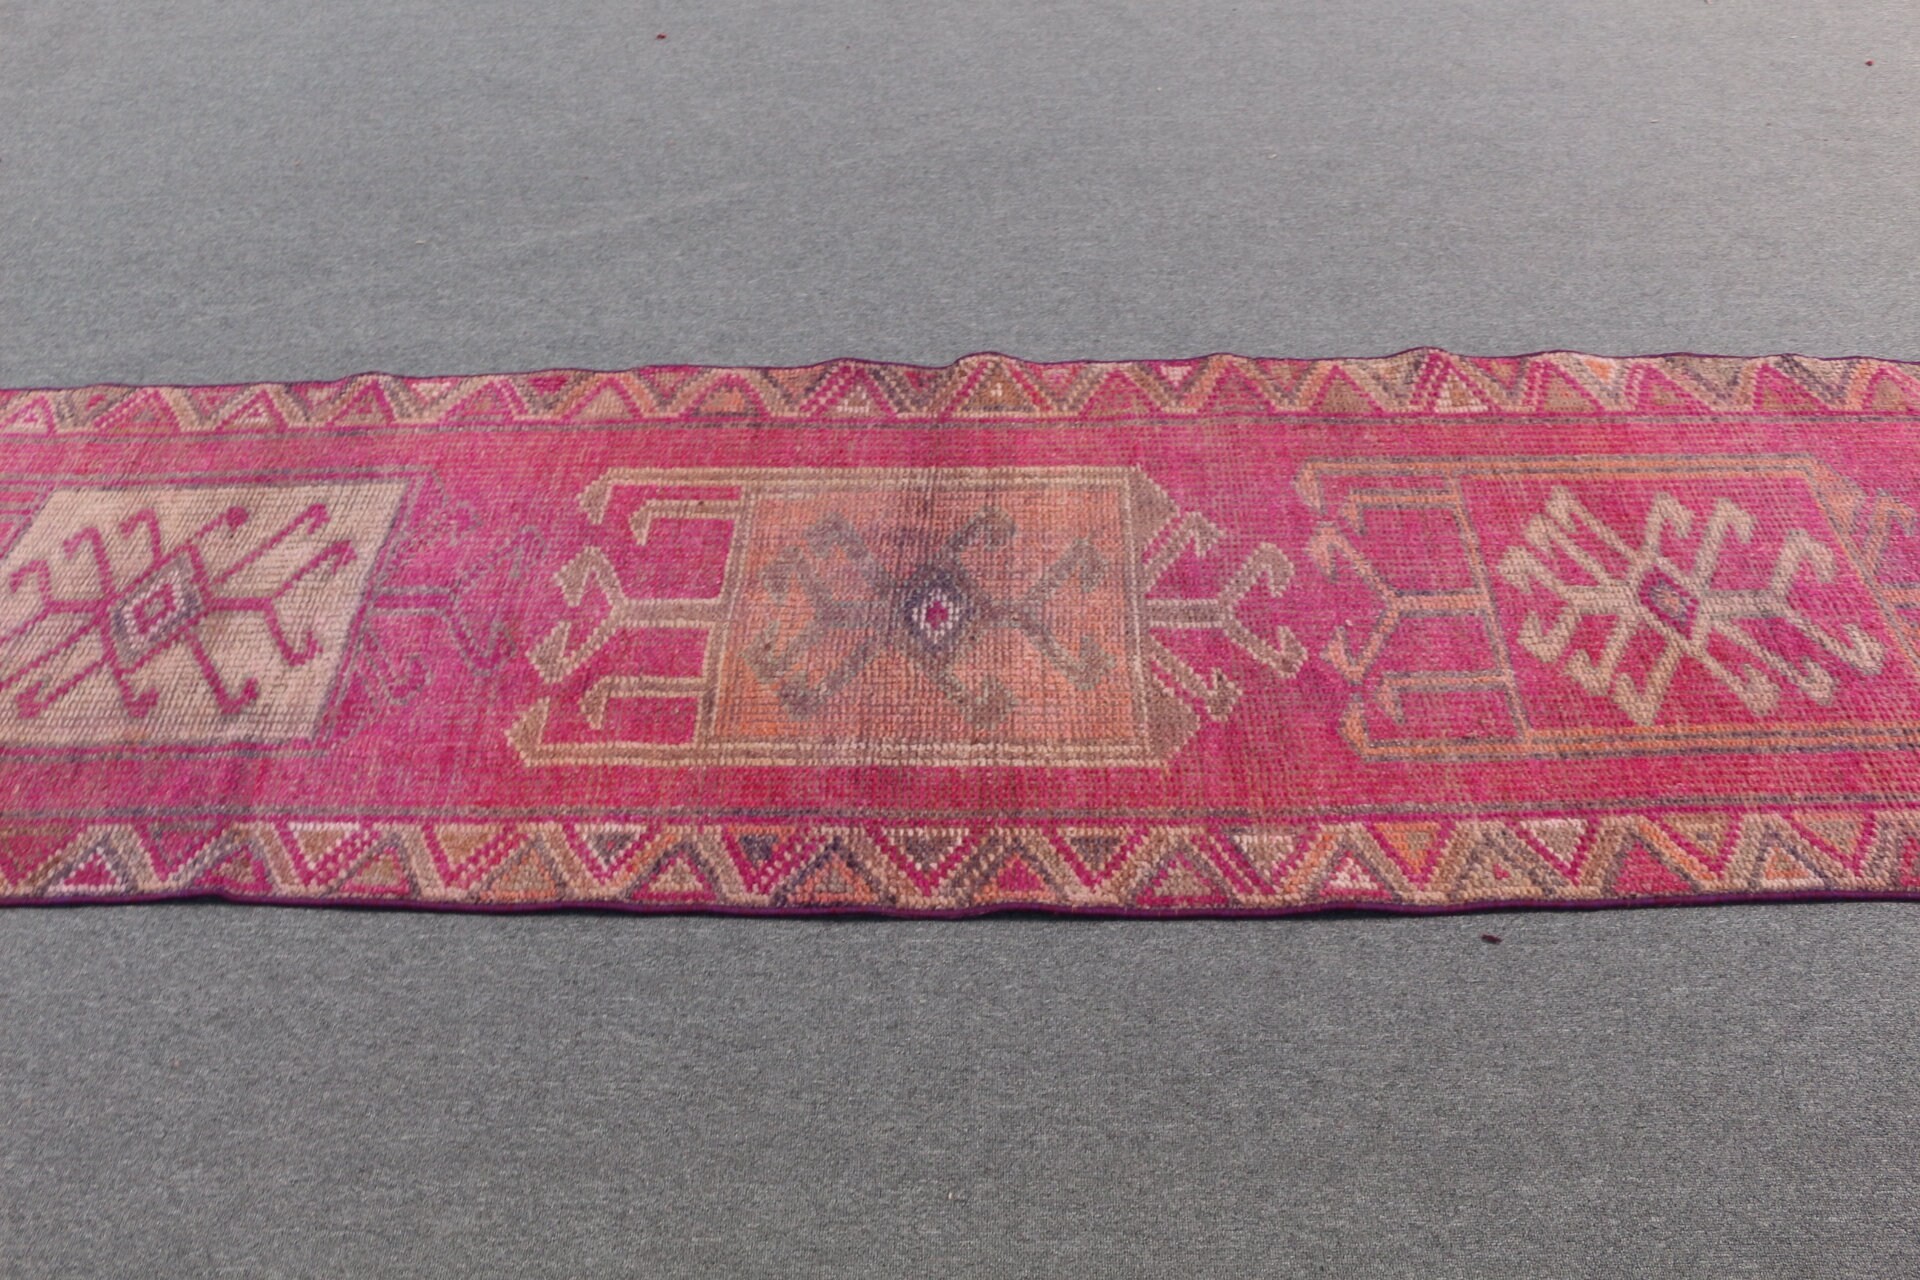 Turkish Rugs, Oushak Rug, Vintage Rugs, 2.8x10.6 ft Runner Rug, Rugs for Corridor, Floor Rug, Pink Antique Rug, Hallway Rug, Tribal Rug